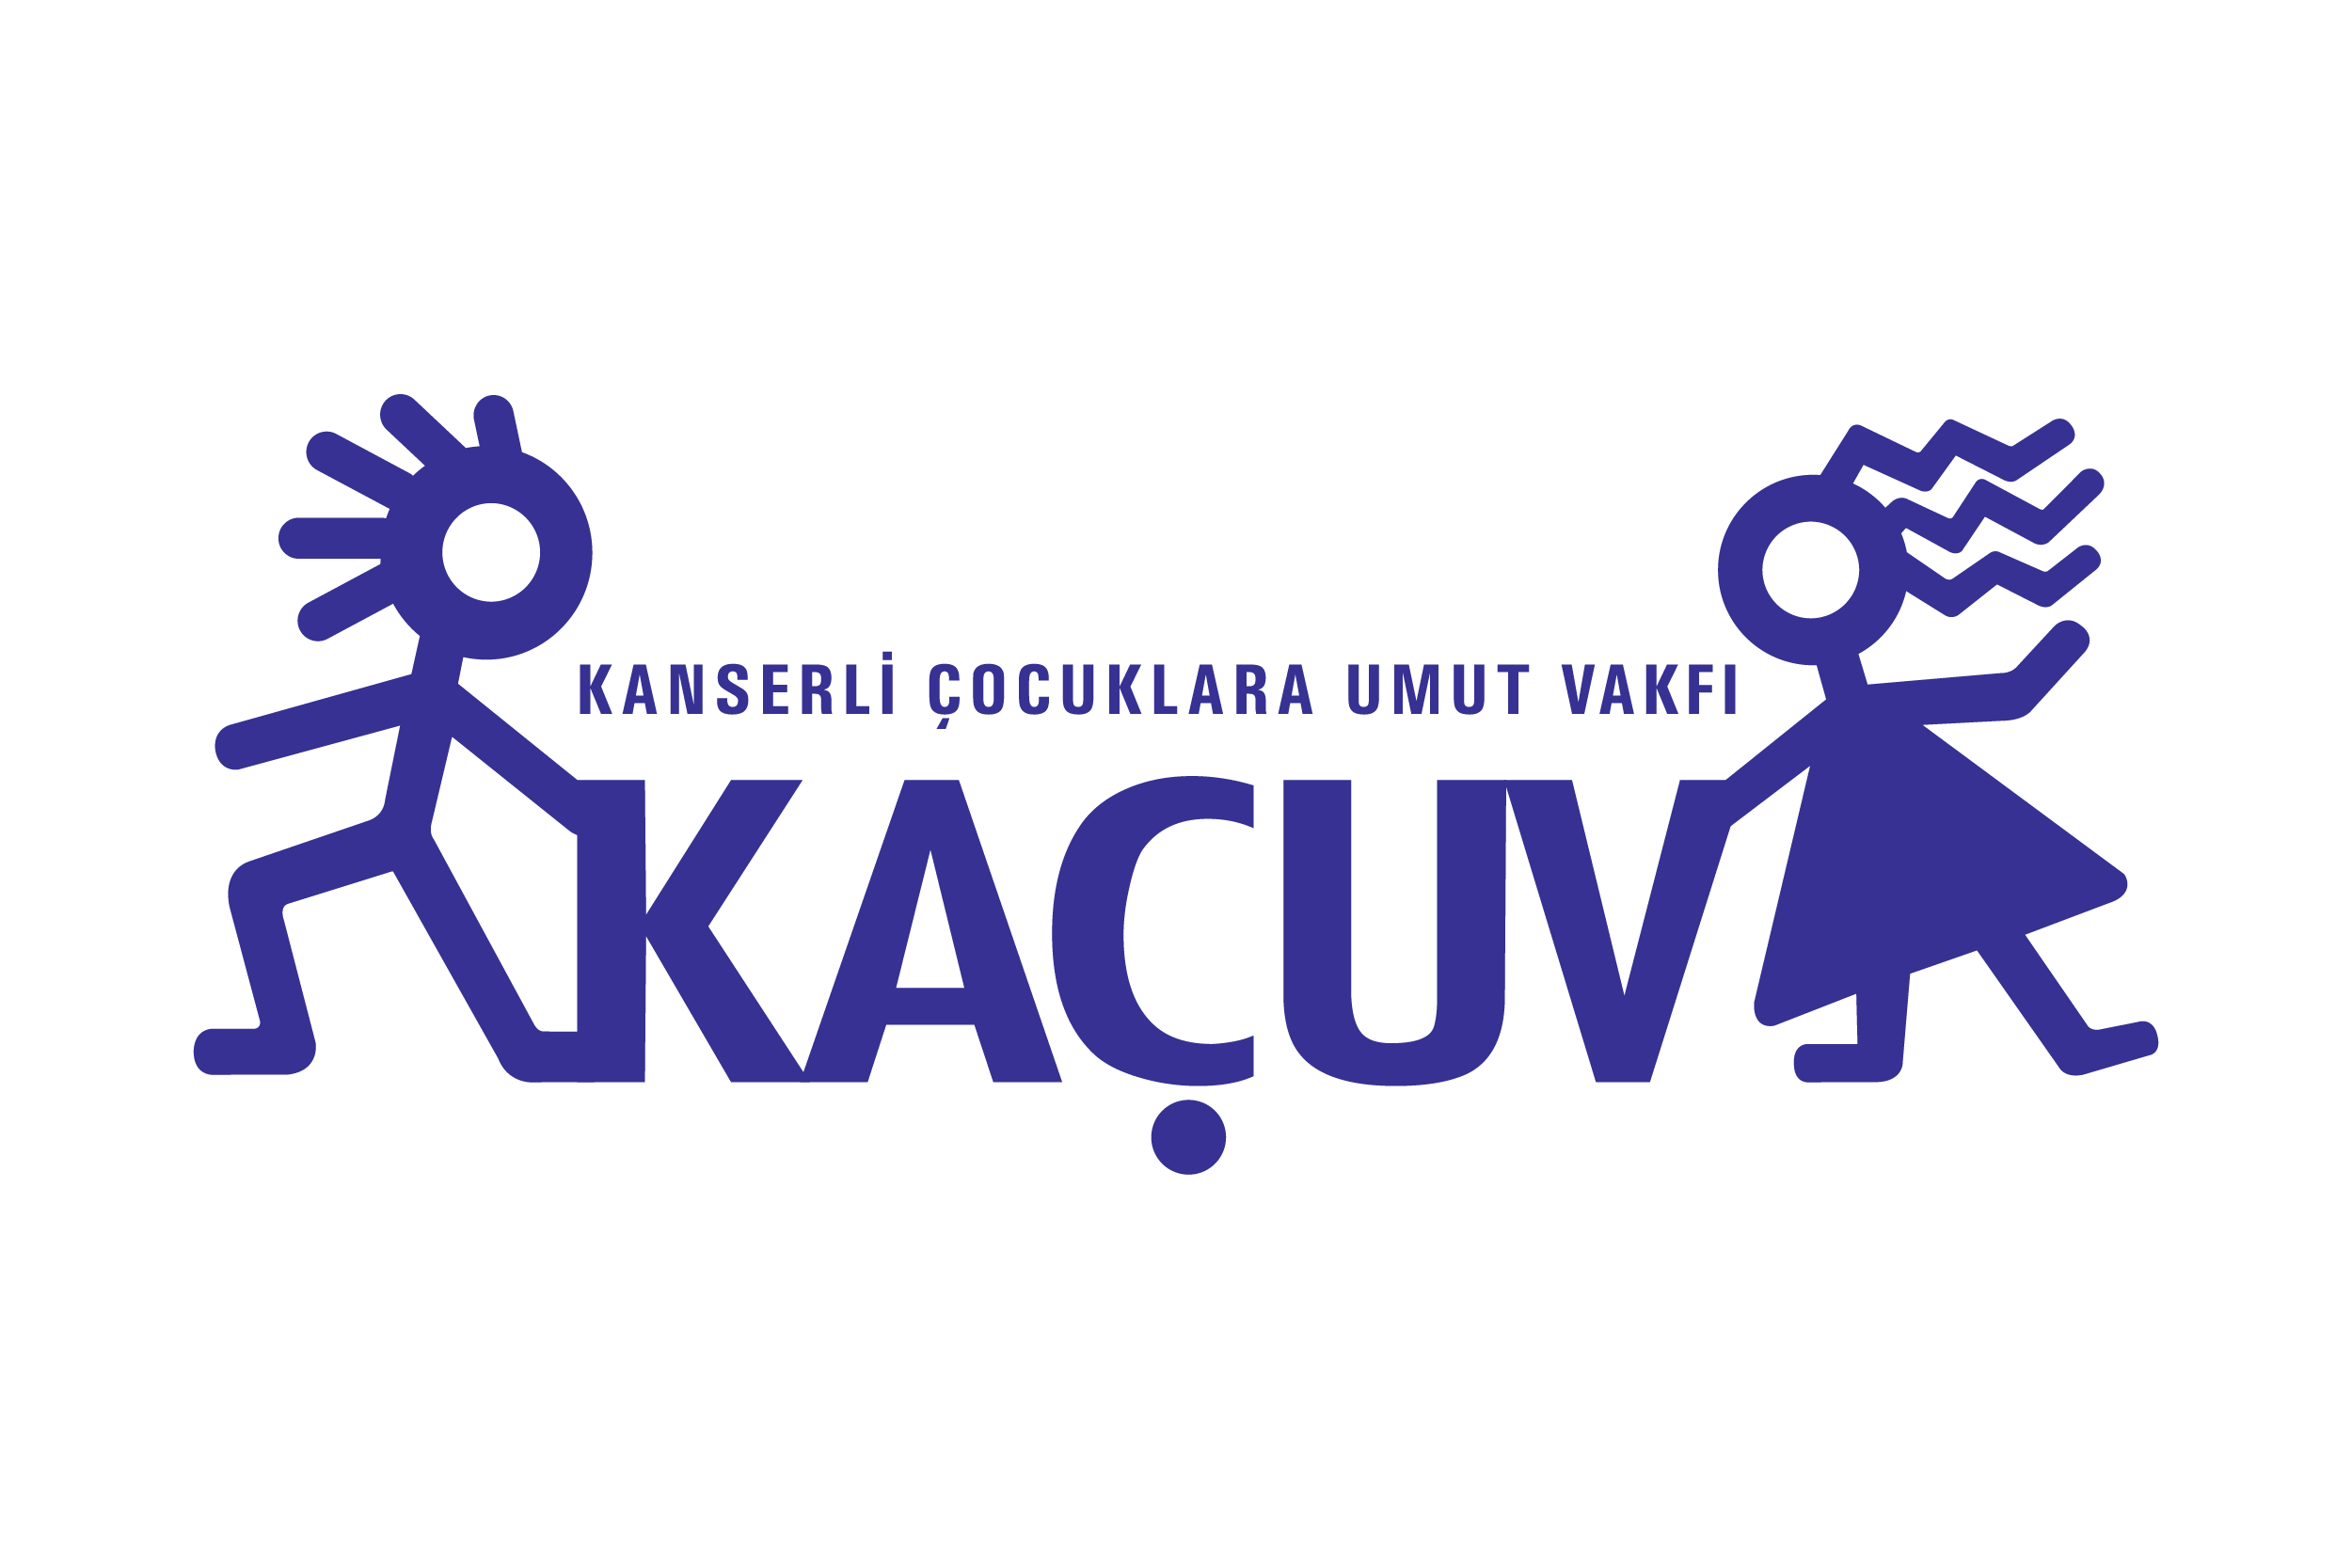 KAÇUV logo3525 c51b6